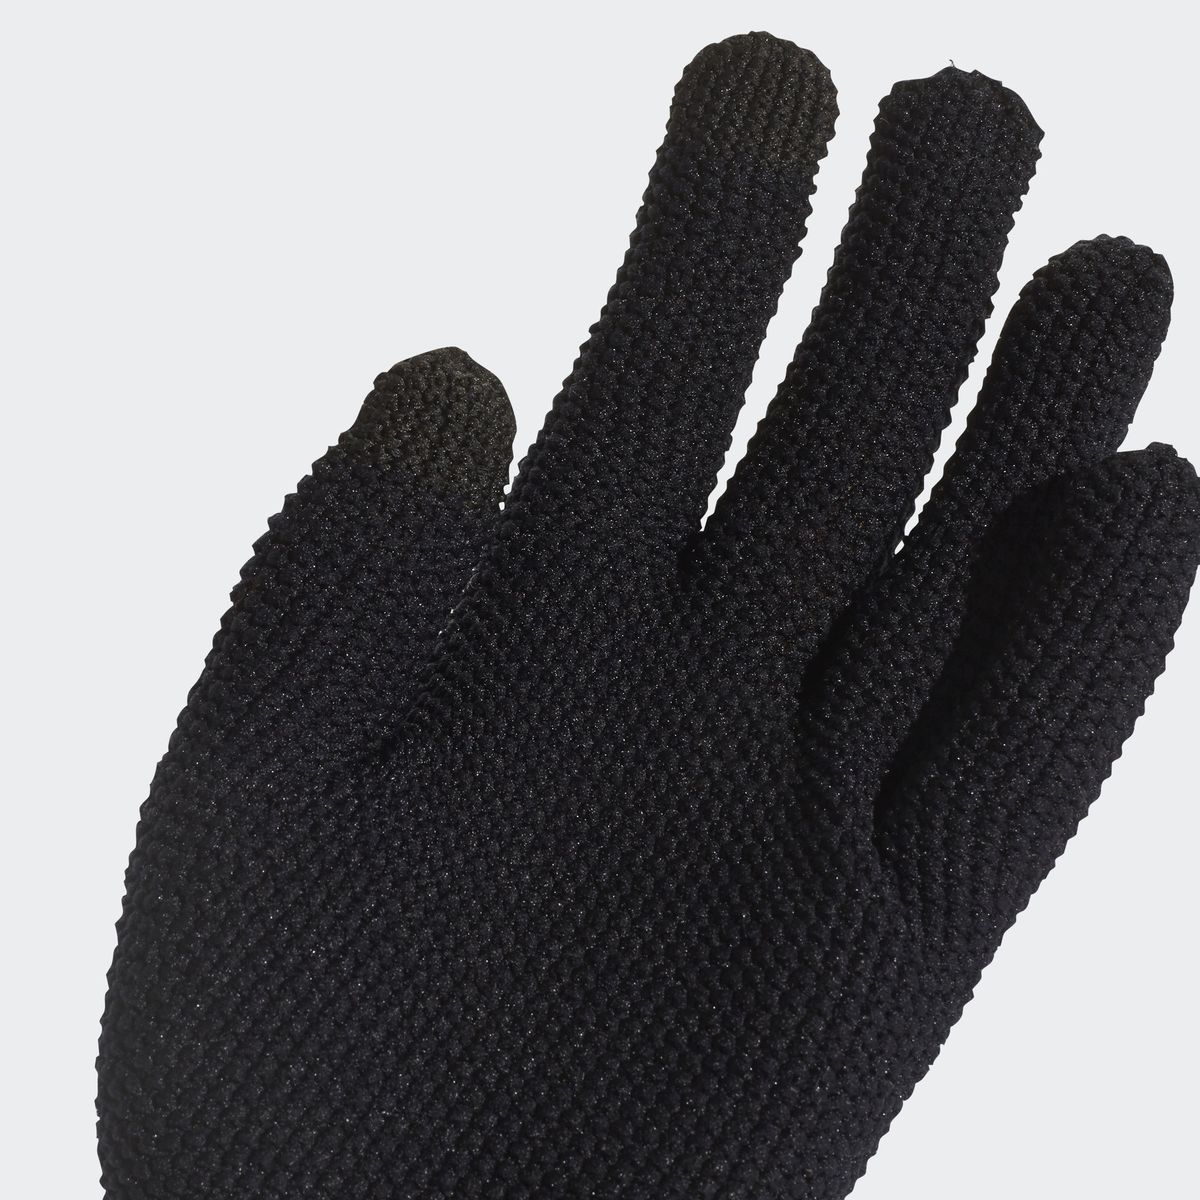   Adidas W Gloves, : . CY6007.  L (22)